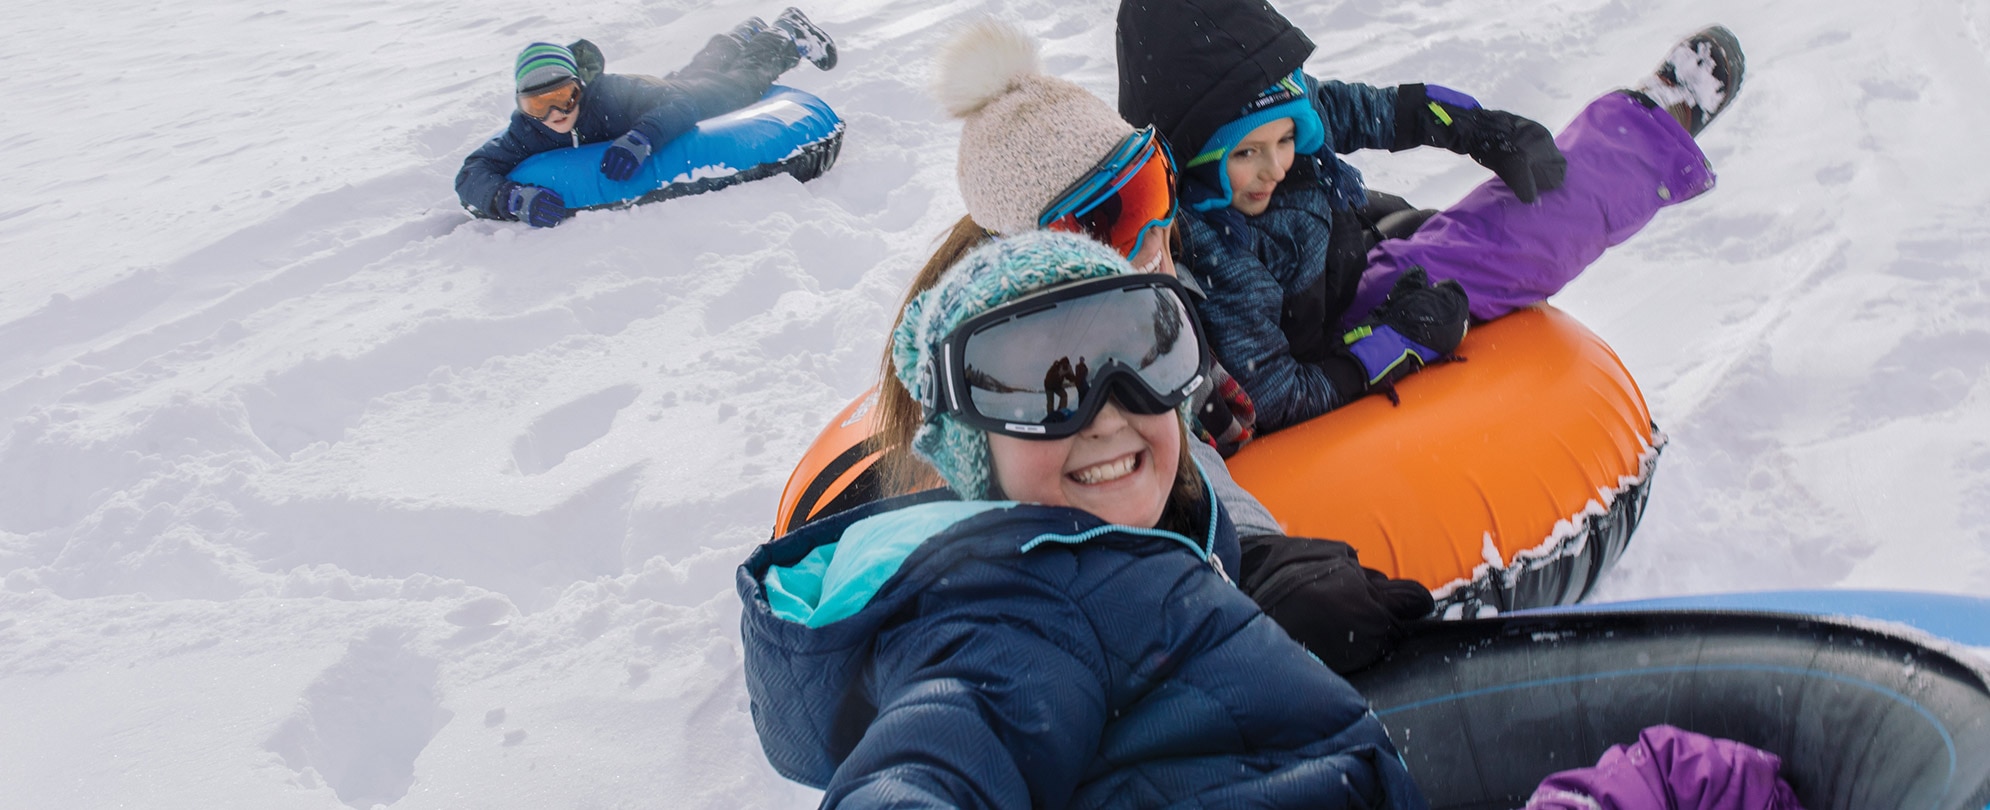 Four kids riding down a mountain on snow tubes.